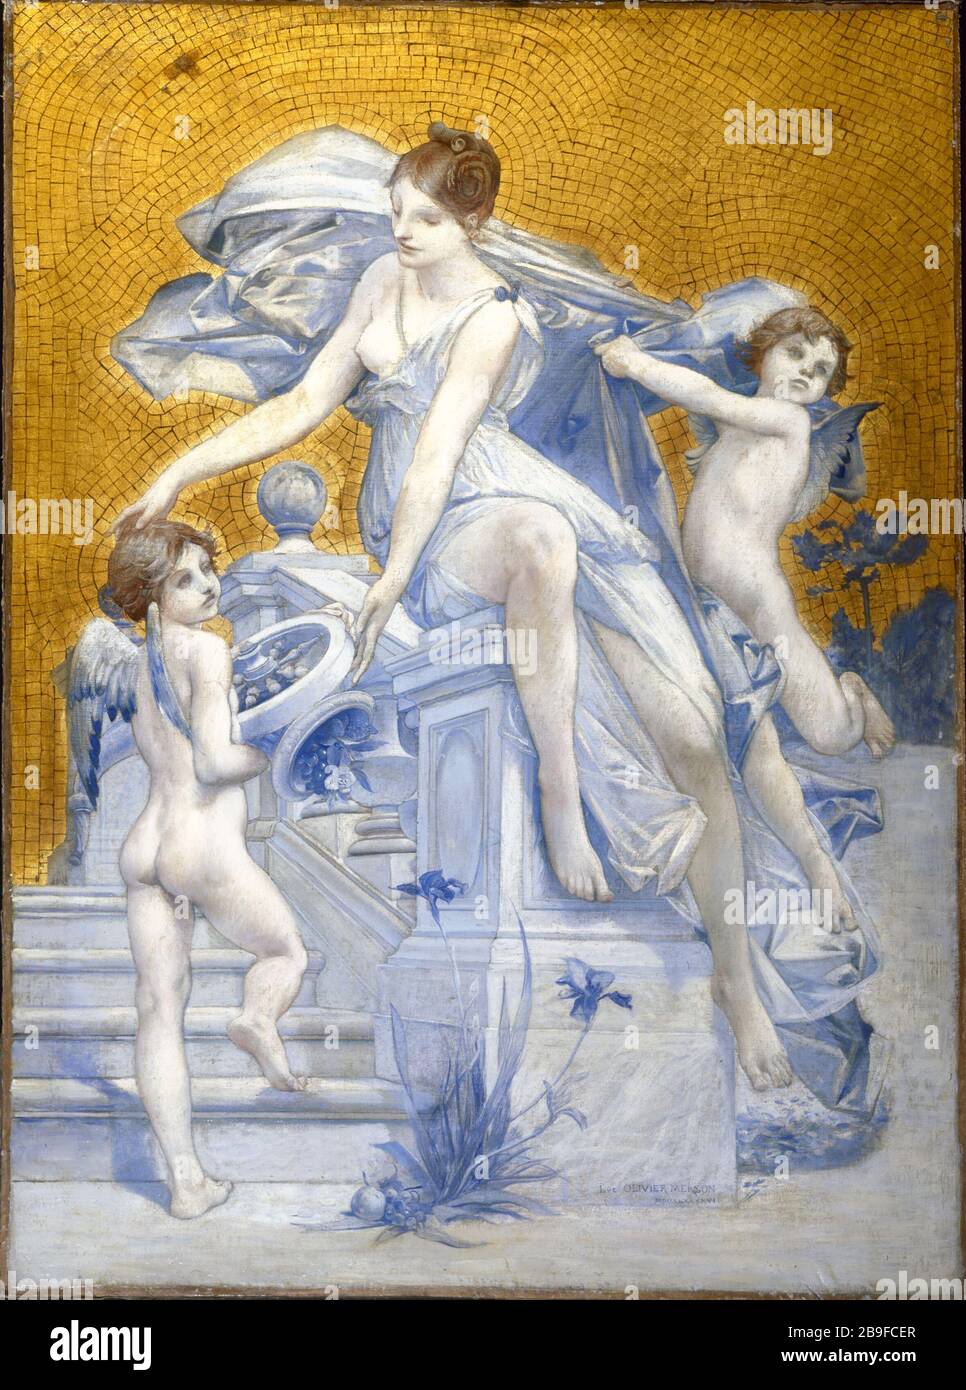 ALLEGORY OF FORTUNE Luc-Olivier Merson (1846-1920). 'Allégorie de la Fortune'. Huile sur toile, 1896. Paris, musée Carnavalet. Stock Photo